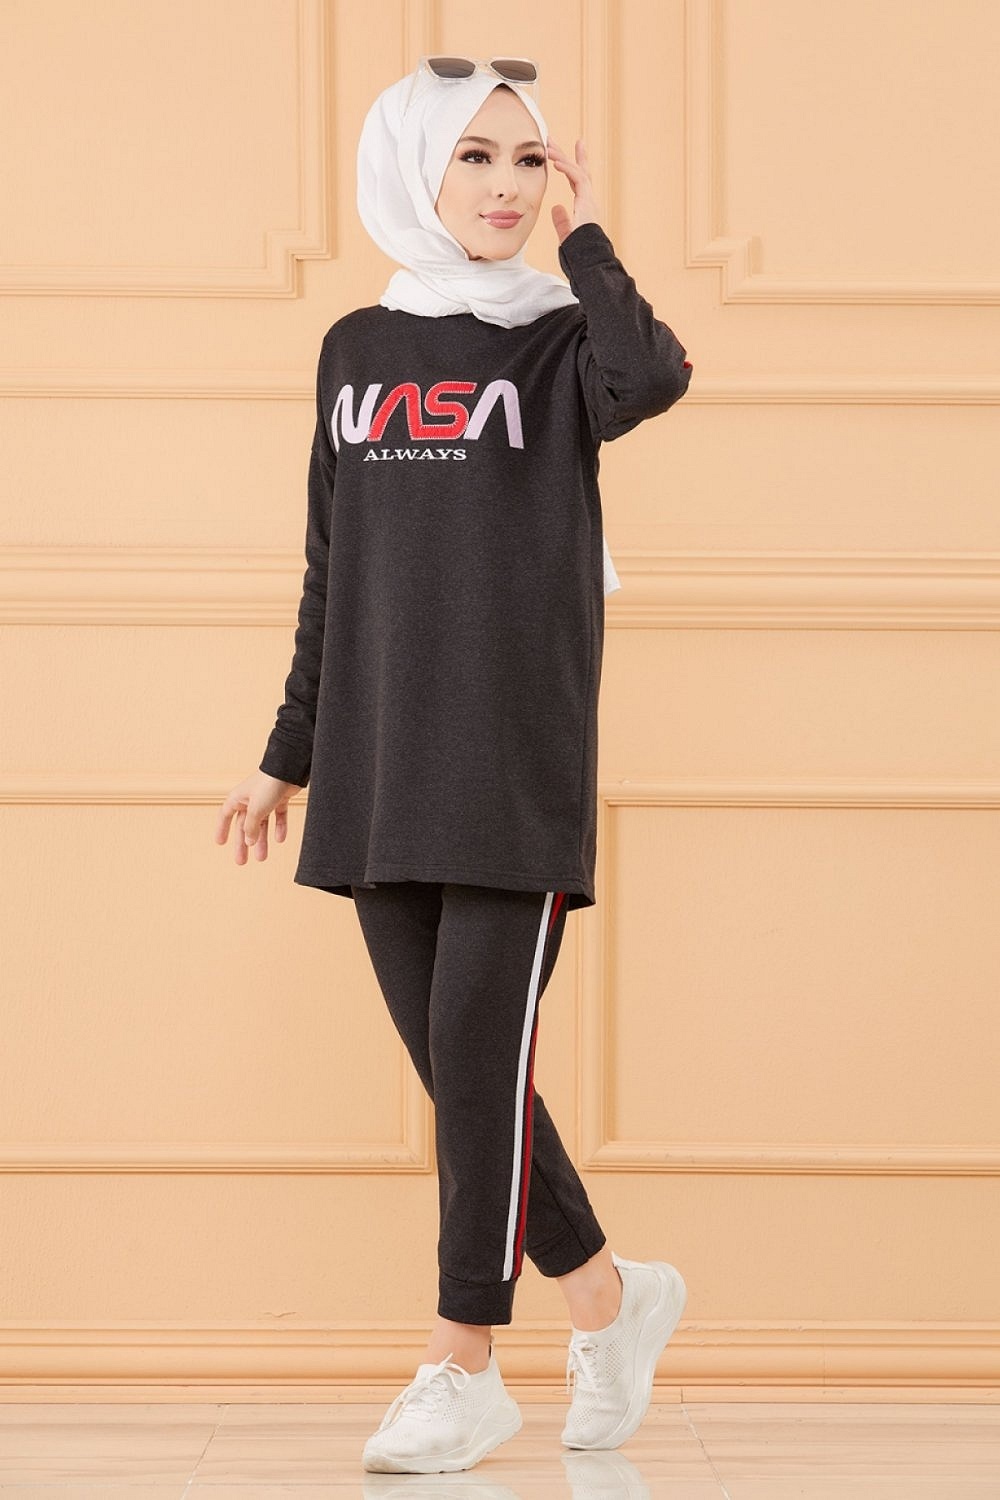 Ensemble jogging pour femme (Vetement sport hijab) - Couleur anthracite -  Prêt à porter et accessoires sur